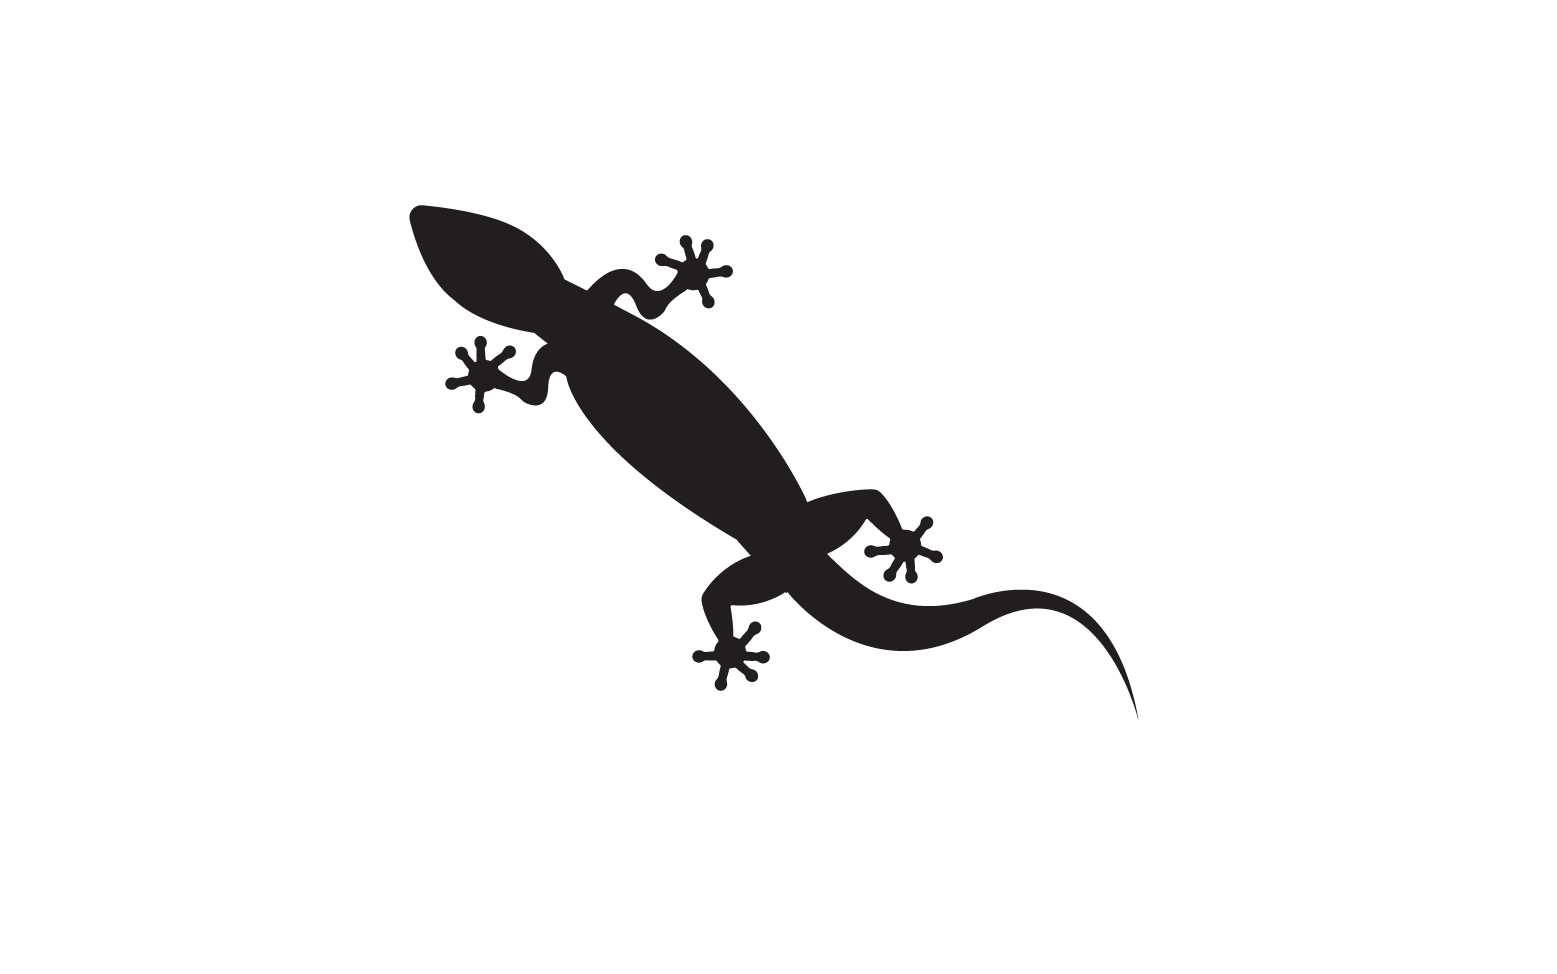 Lizard chameleon home lizard logo v50